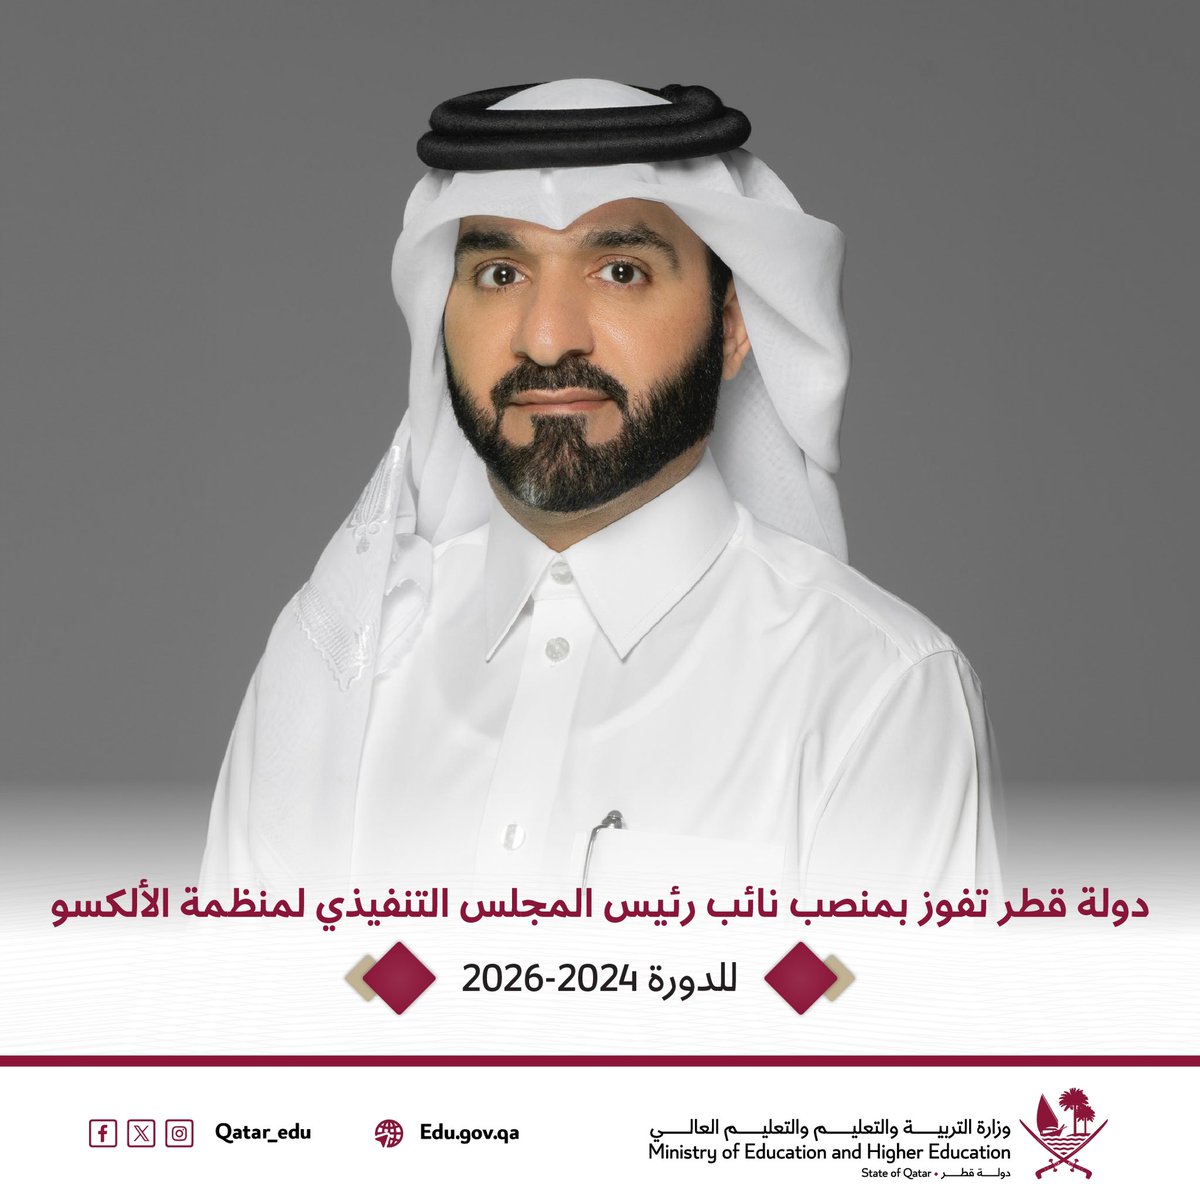 دولة قطر تفوز بمنصب نائب رئيس المجلس التنفيذي لمنظمة الألكسو.

للمزيد:
edu.gov.qa/ar/News/Detail…